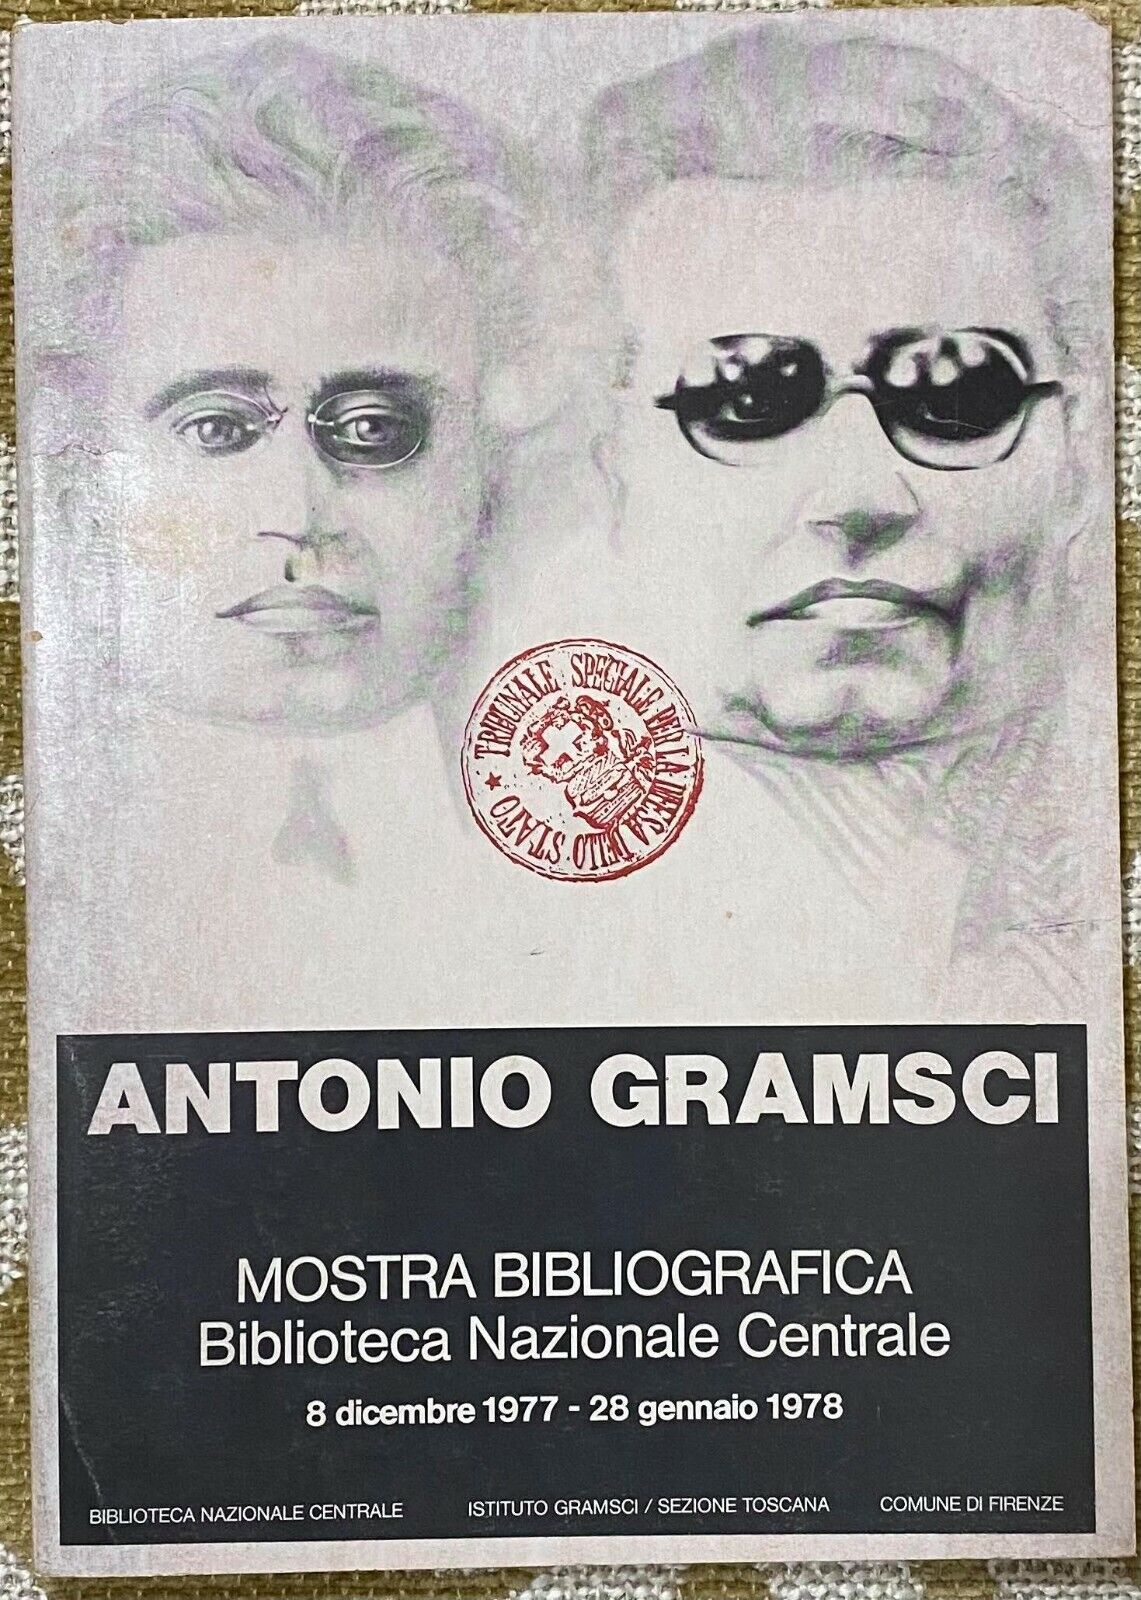 Antonio Gramsci - Aa.Vv. - Istituto Gramsci - 1977 - M